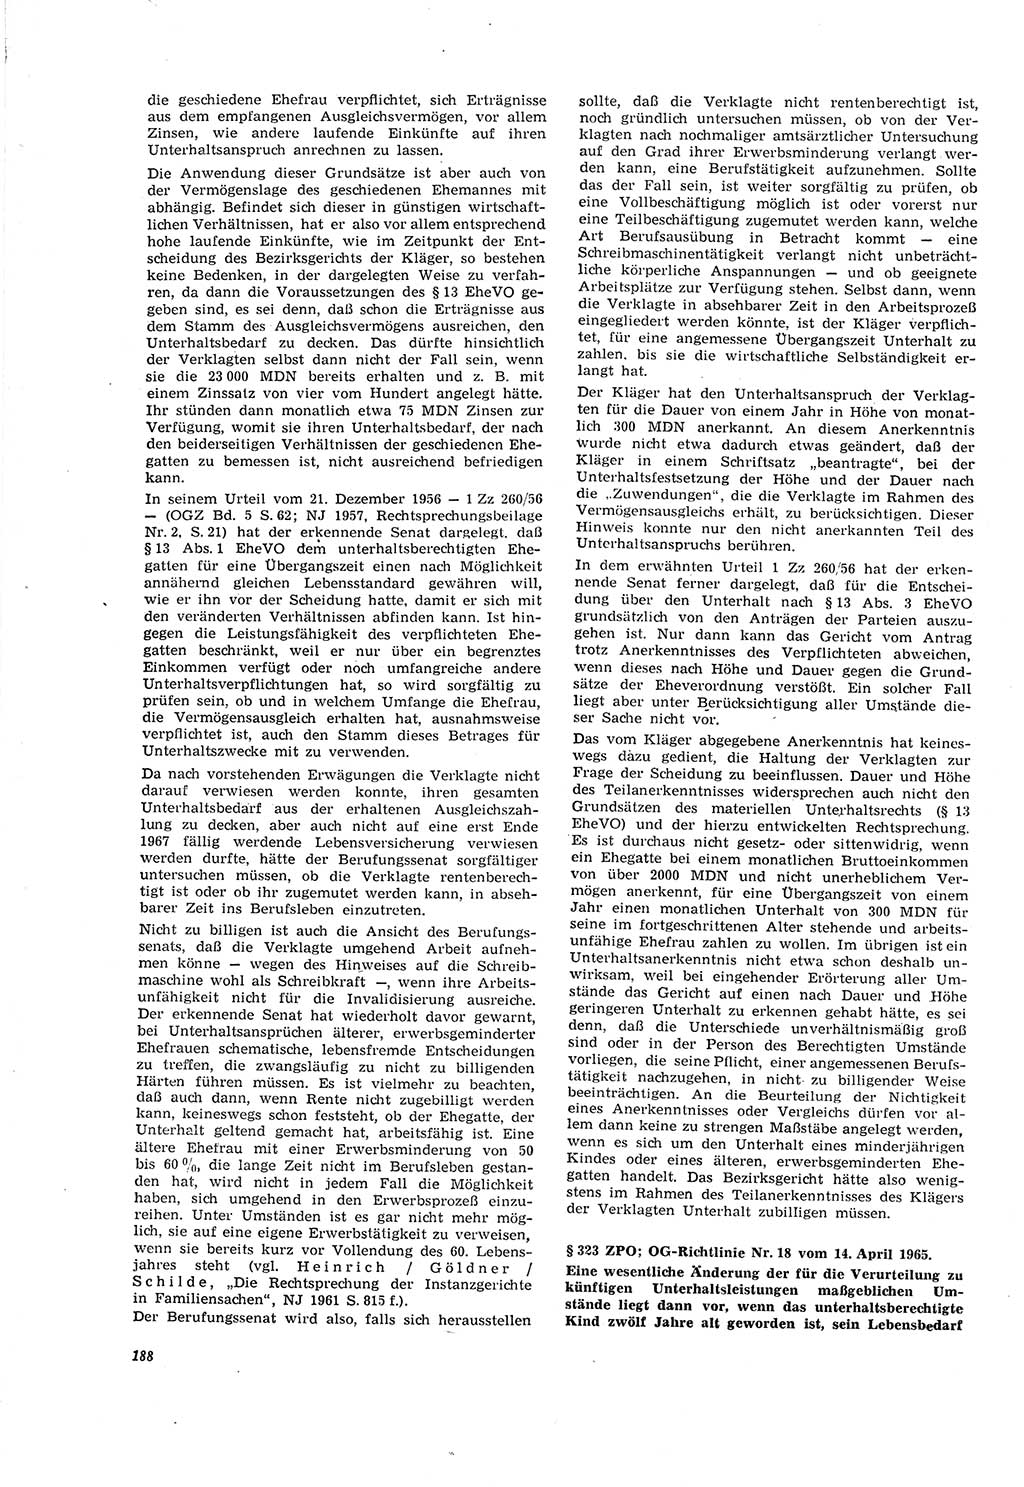 Neue Justiz (NJ), Zeitschrift für Recht und Rechtswissenschaft [Deutsche Demokratische Republik (DDR)], 20. Jahrgang 1966, Seite 188 (NJ DDR 1966, S. 188)